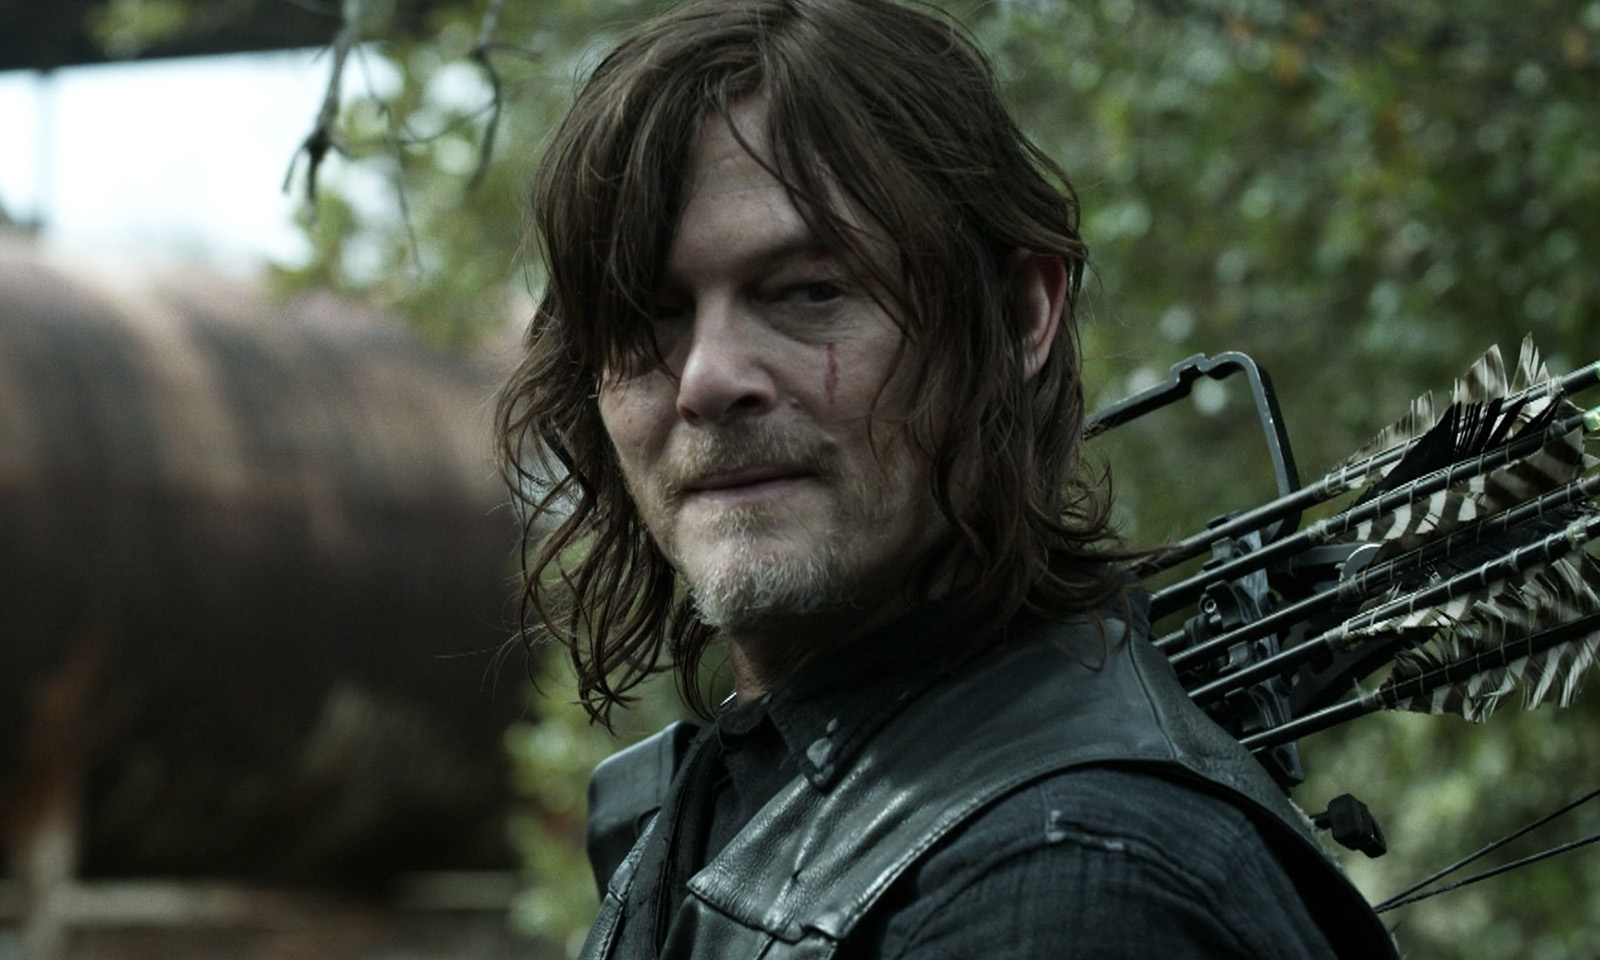 Daryl com sua besta em cena do episódio 23 da 11ª temporada de The Walking Dead.